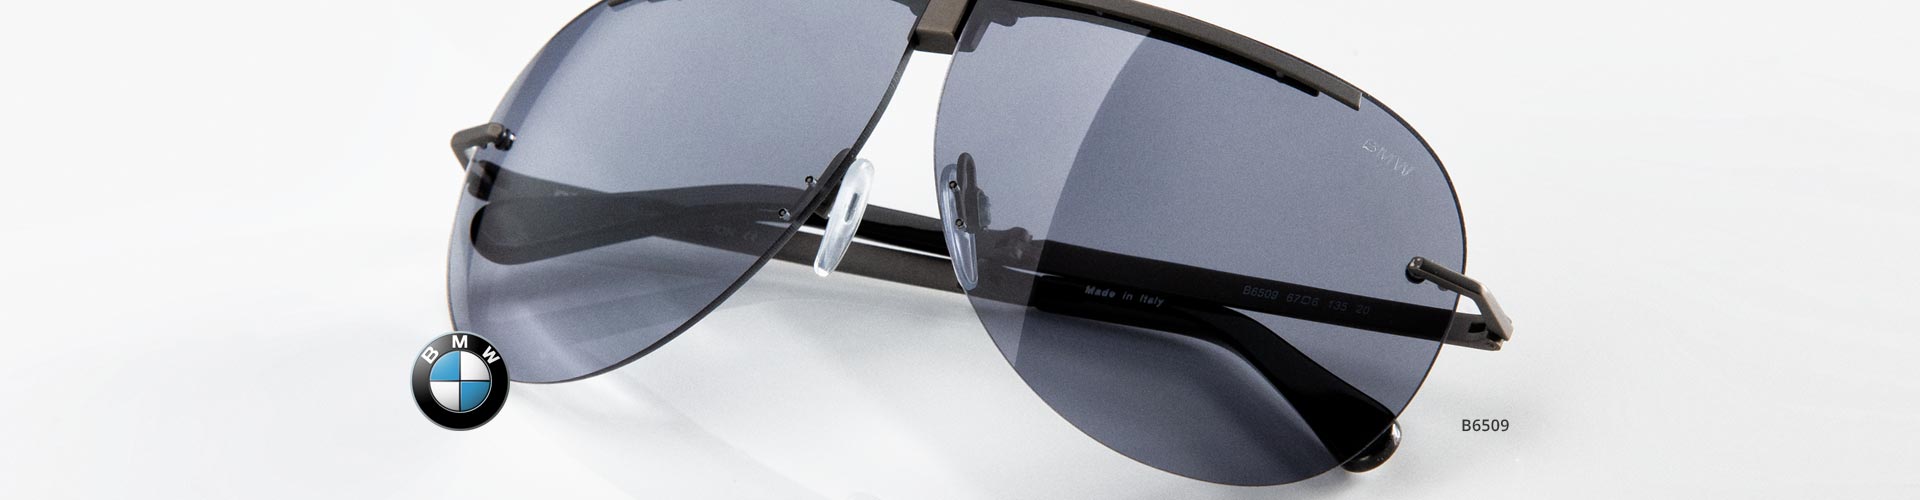 BMW Sunglasses | Free Shipping | FramesDirect.com